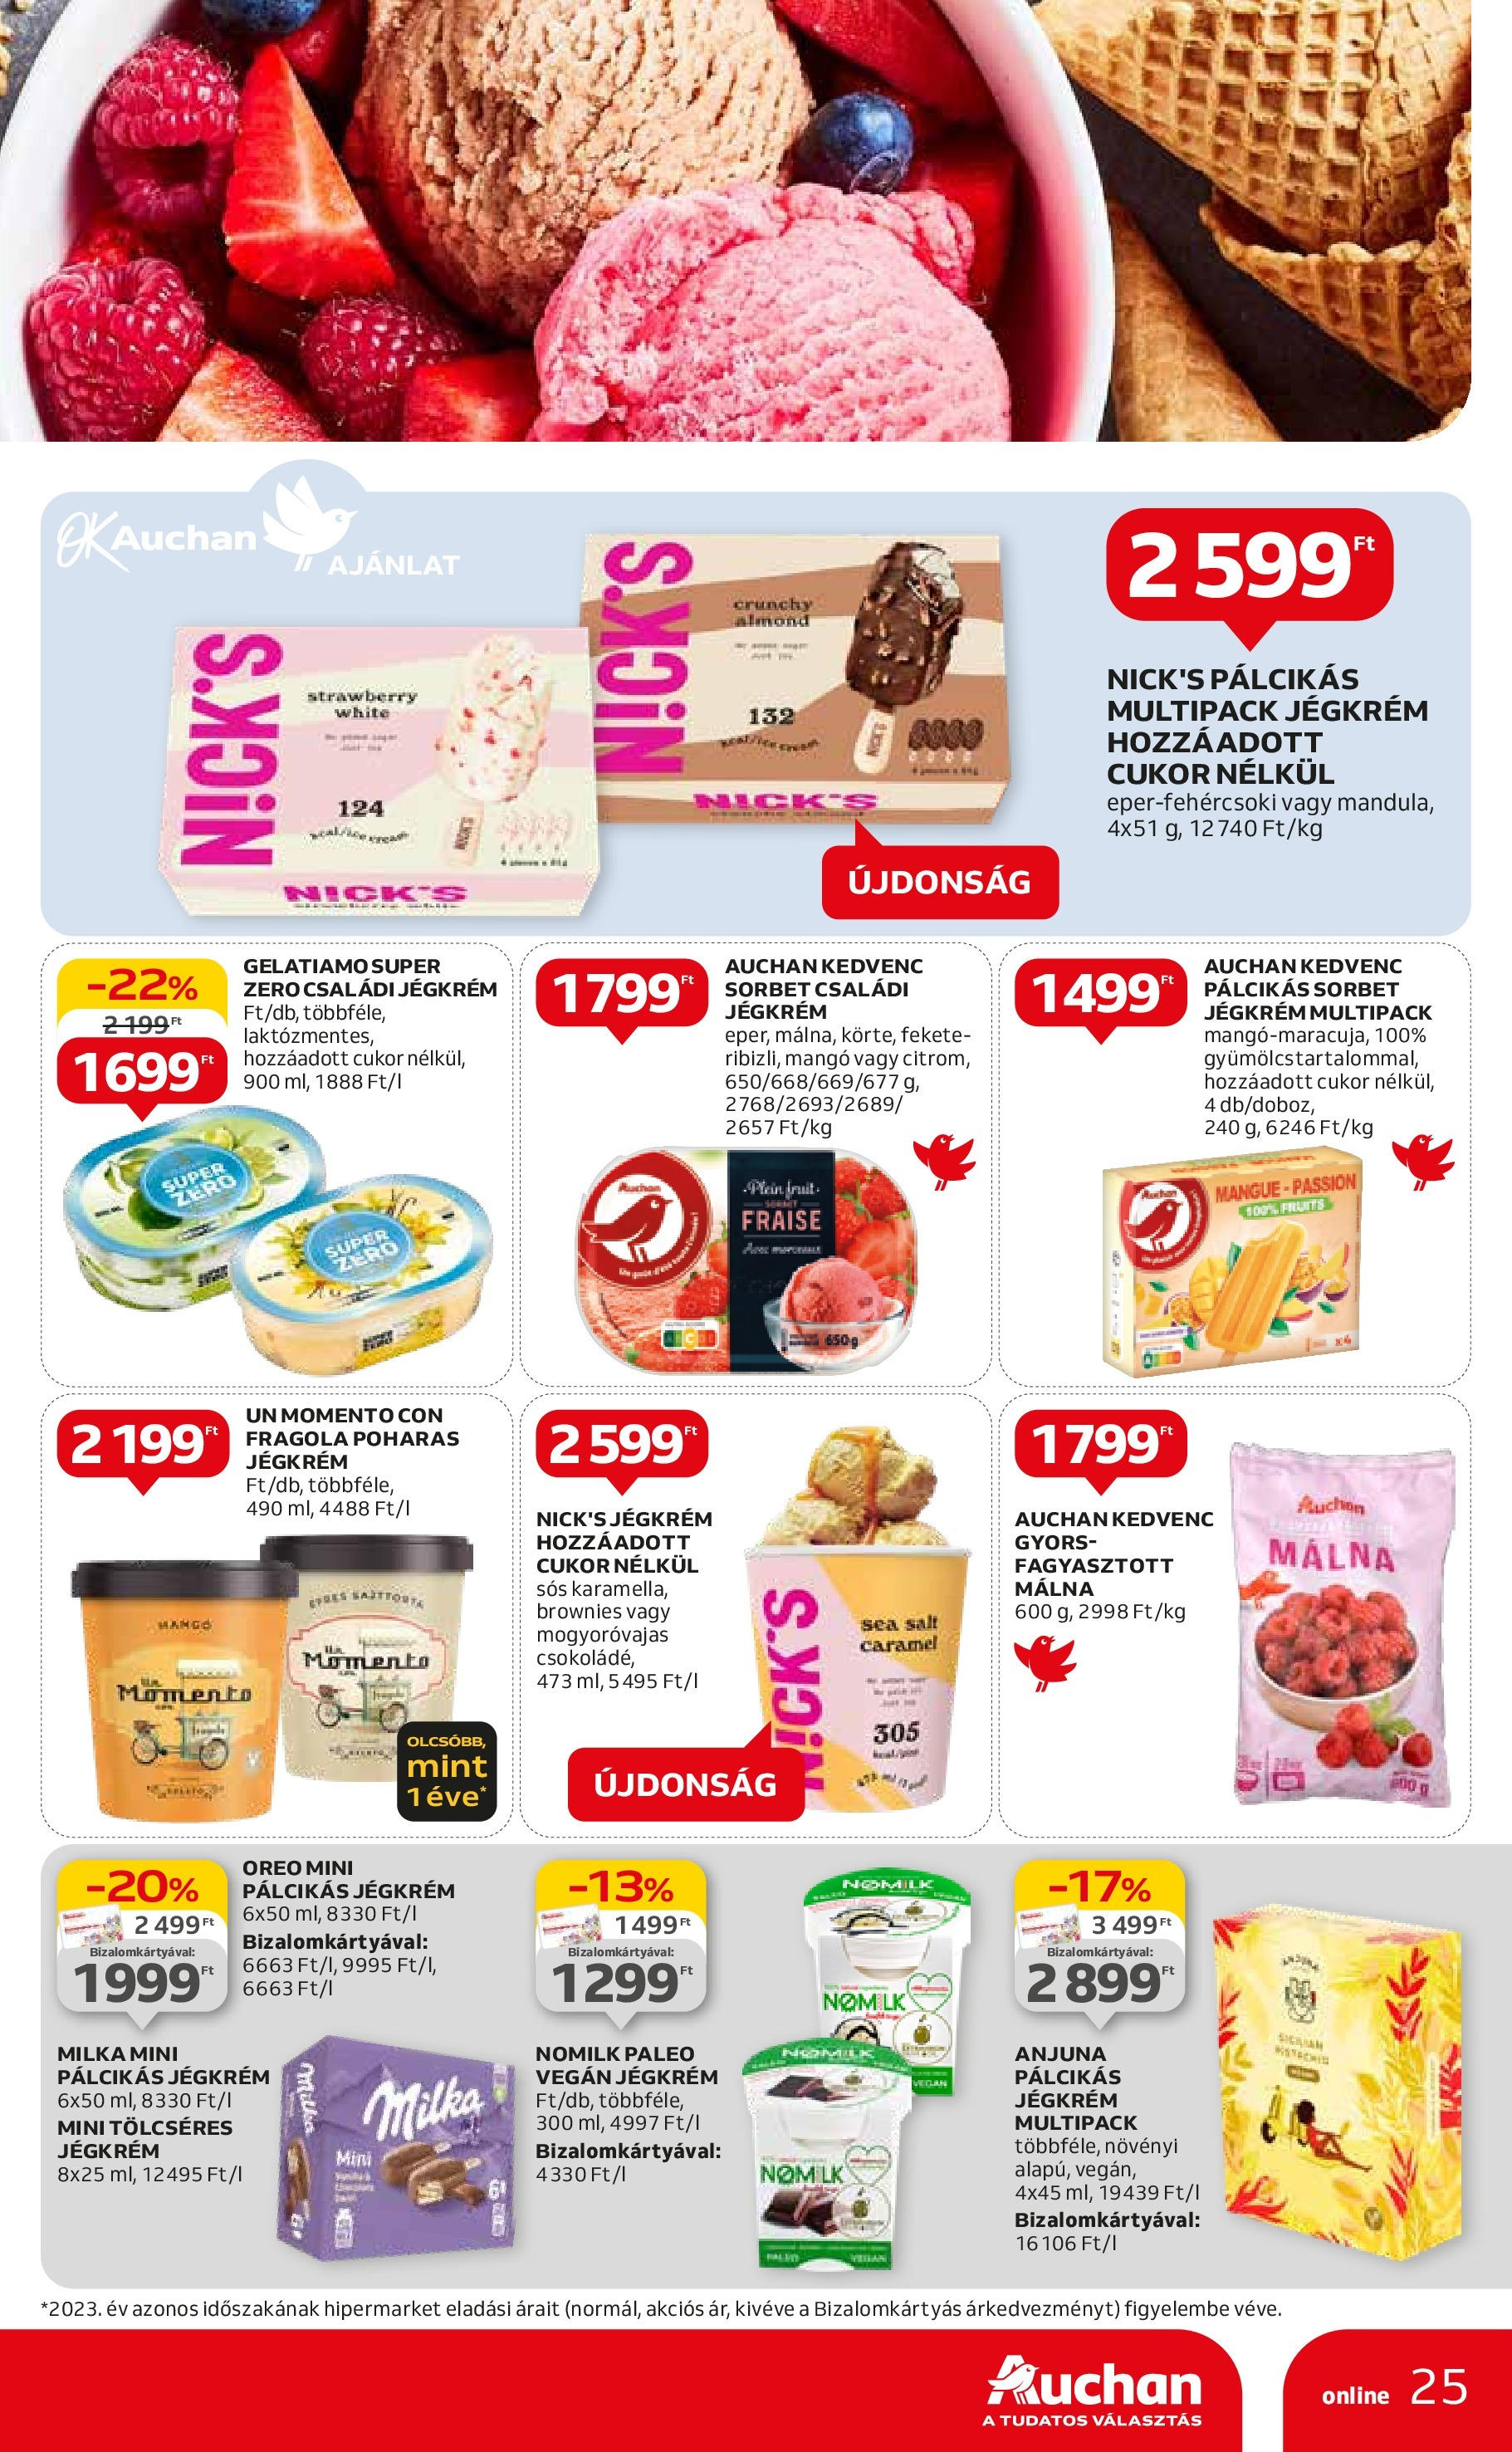 Auchan  Akciós újság - 2024.04.25. -tól/töl > akció, szórólap 🛍️ | Oldal: 25 | Termékek: Vegán, Jégkrém, Cukor, Mangó